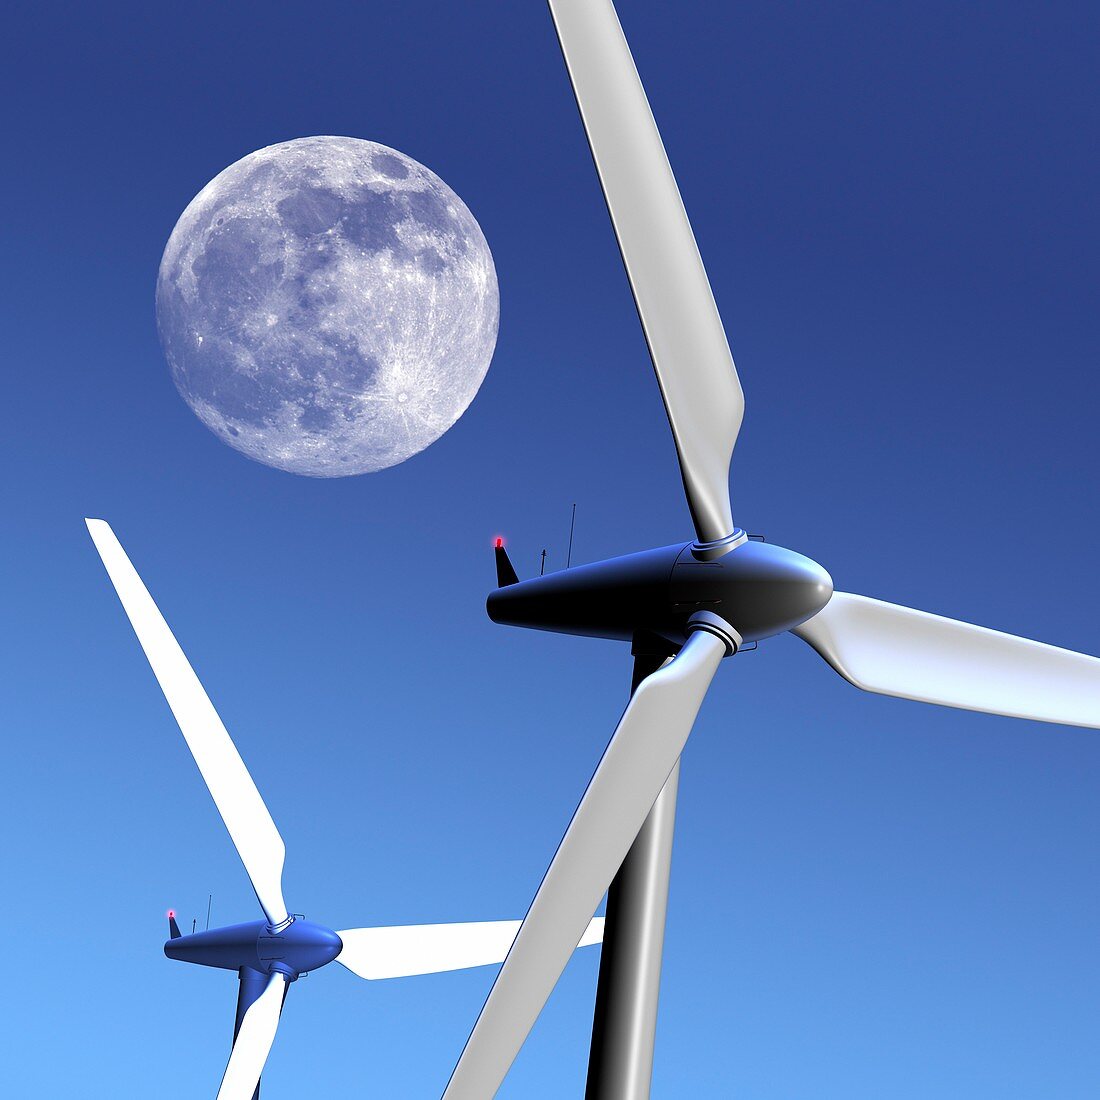 Moon over wind turbines